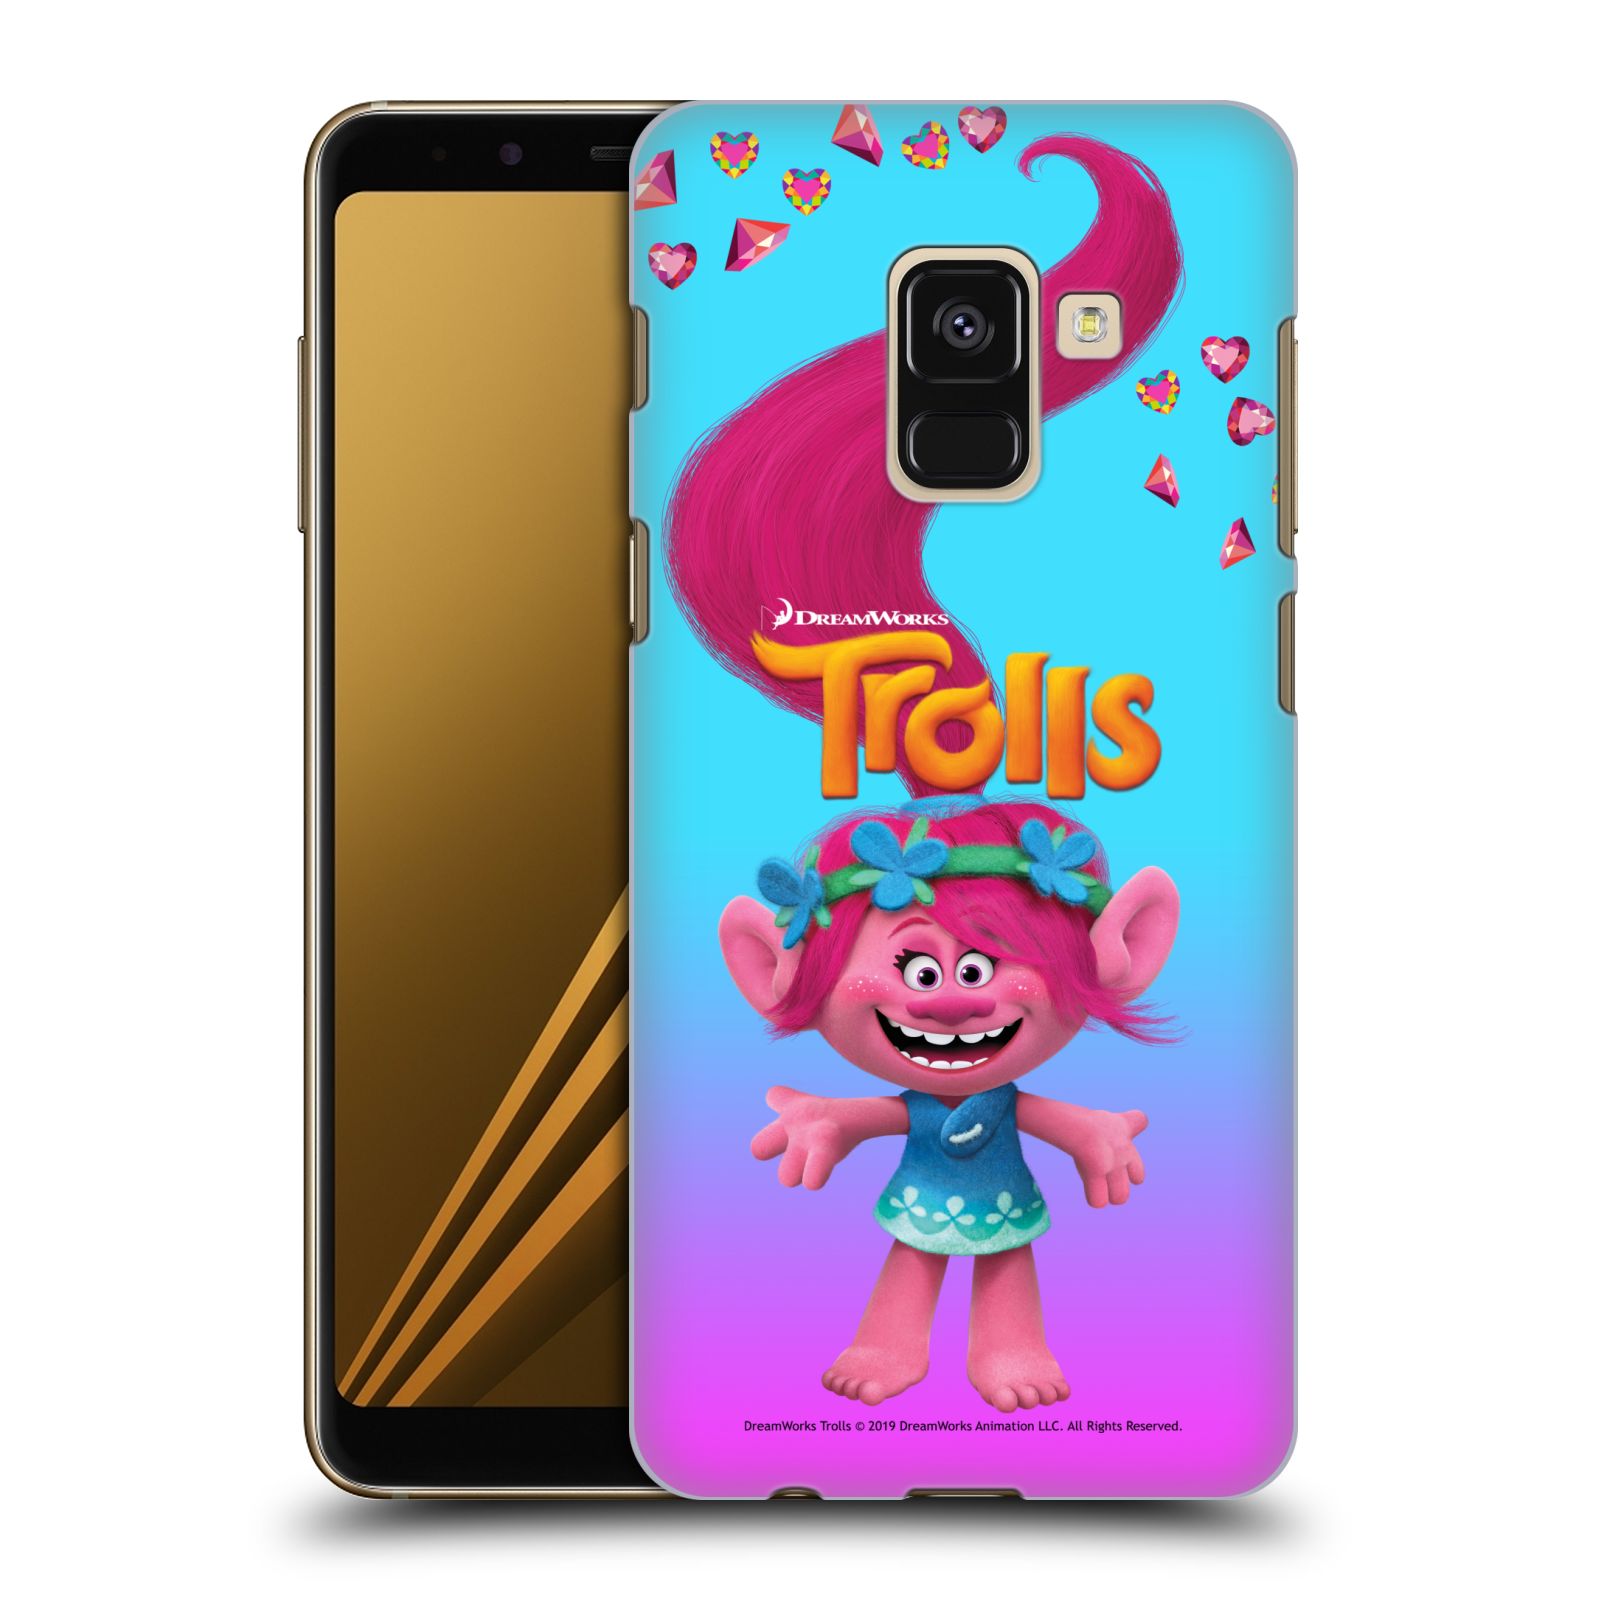 Pouzdro na mobil Samsung Galaxy A8+ 2018, A8 PLUS 2018 - HEAD CASE - Pohádka - Trollové skřítek holčička Poppy